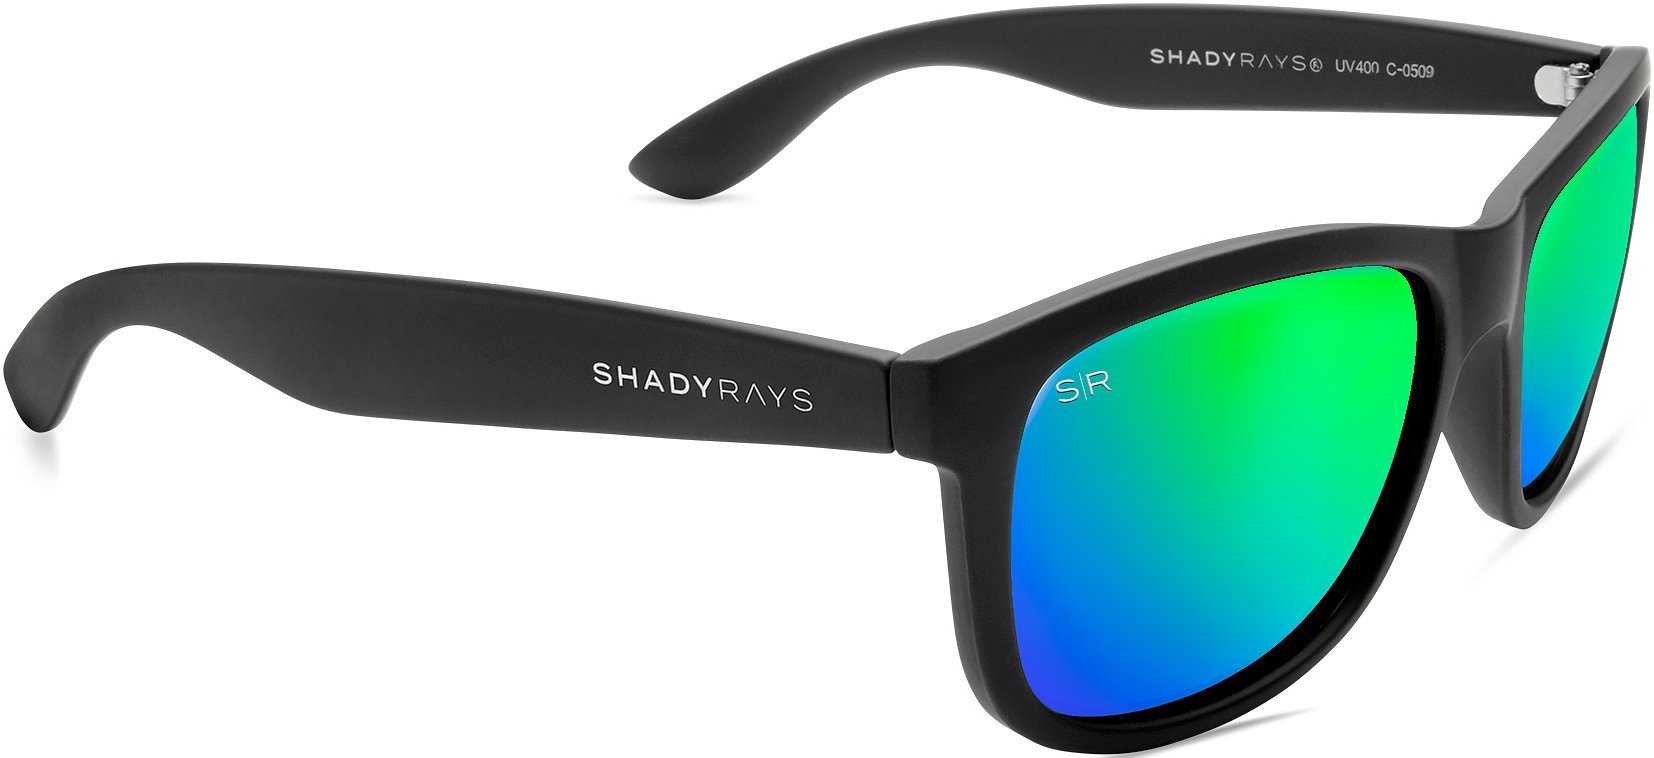 Shady Rays Signature Series - Black Emerald Polarized Sunglasses Pro - Polarized